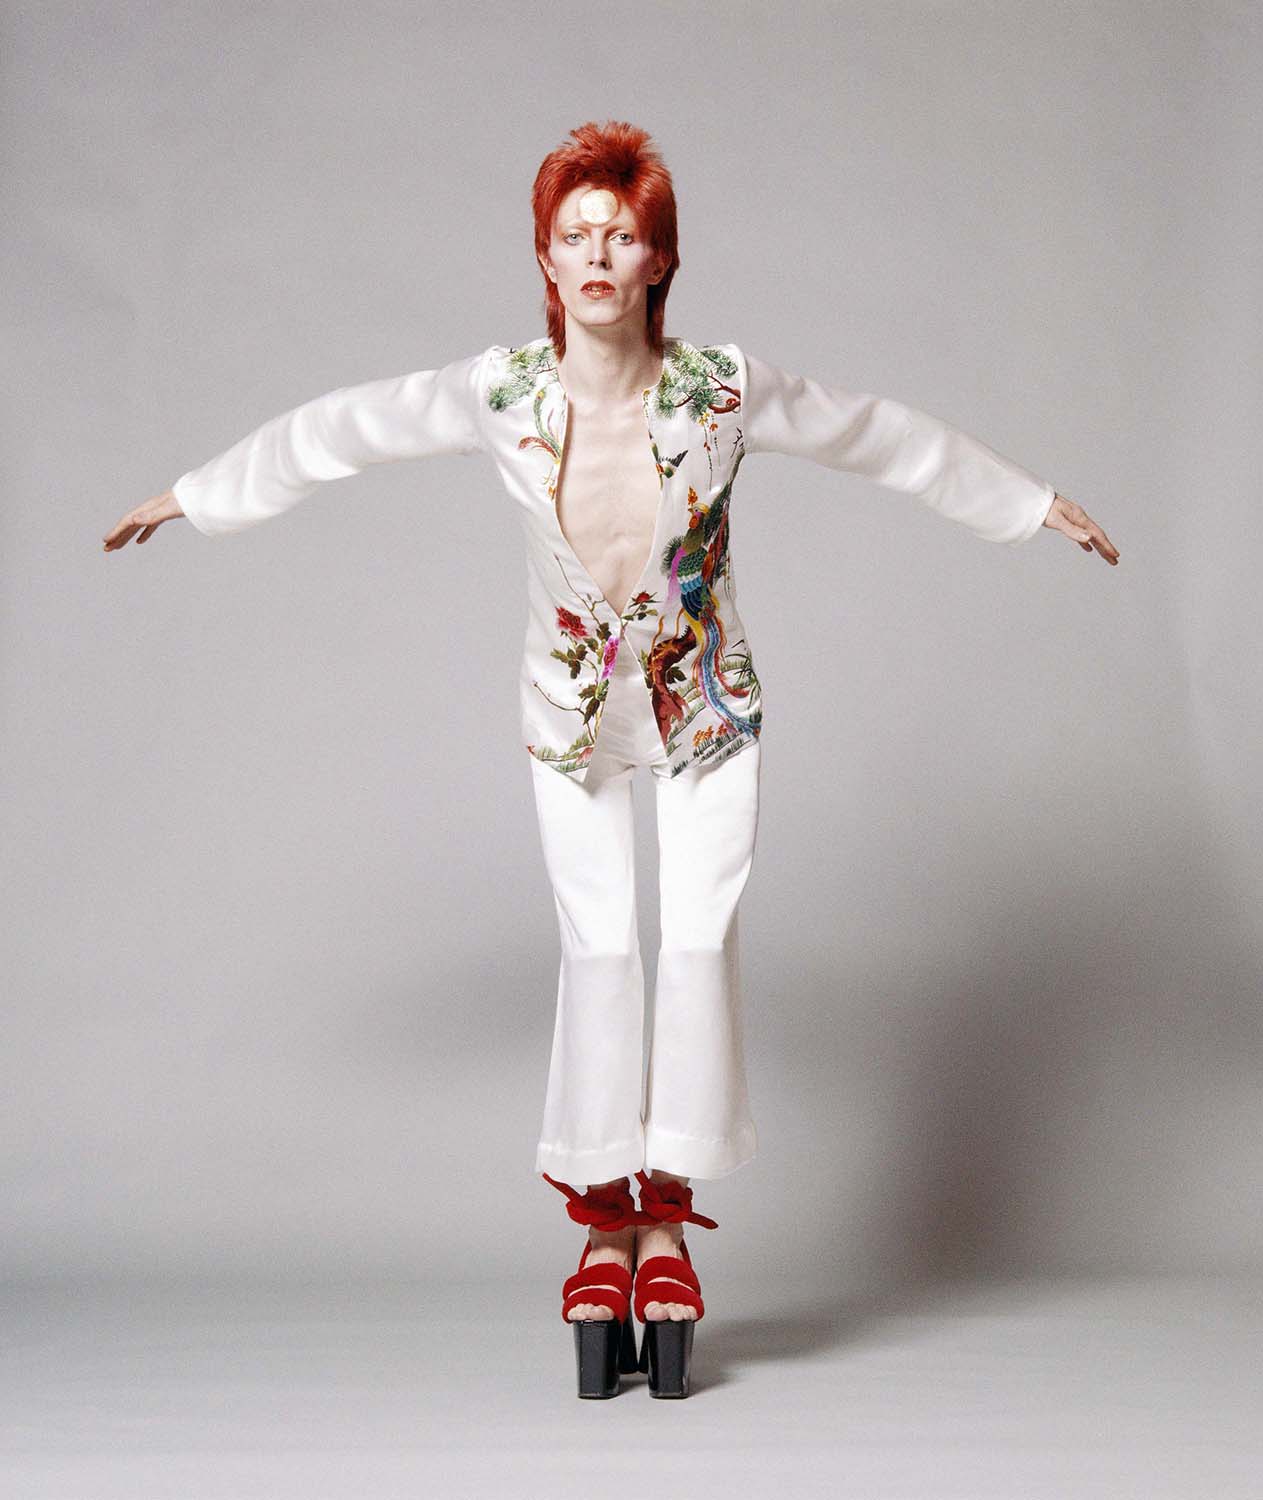 Watch That Man: David Bowie - dressed by Kansai Yamamoto - Snap